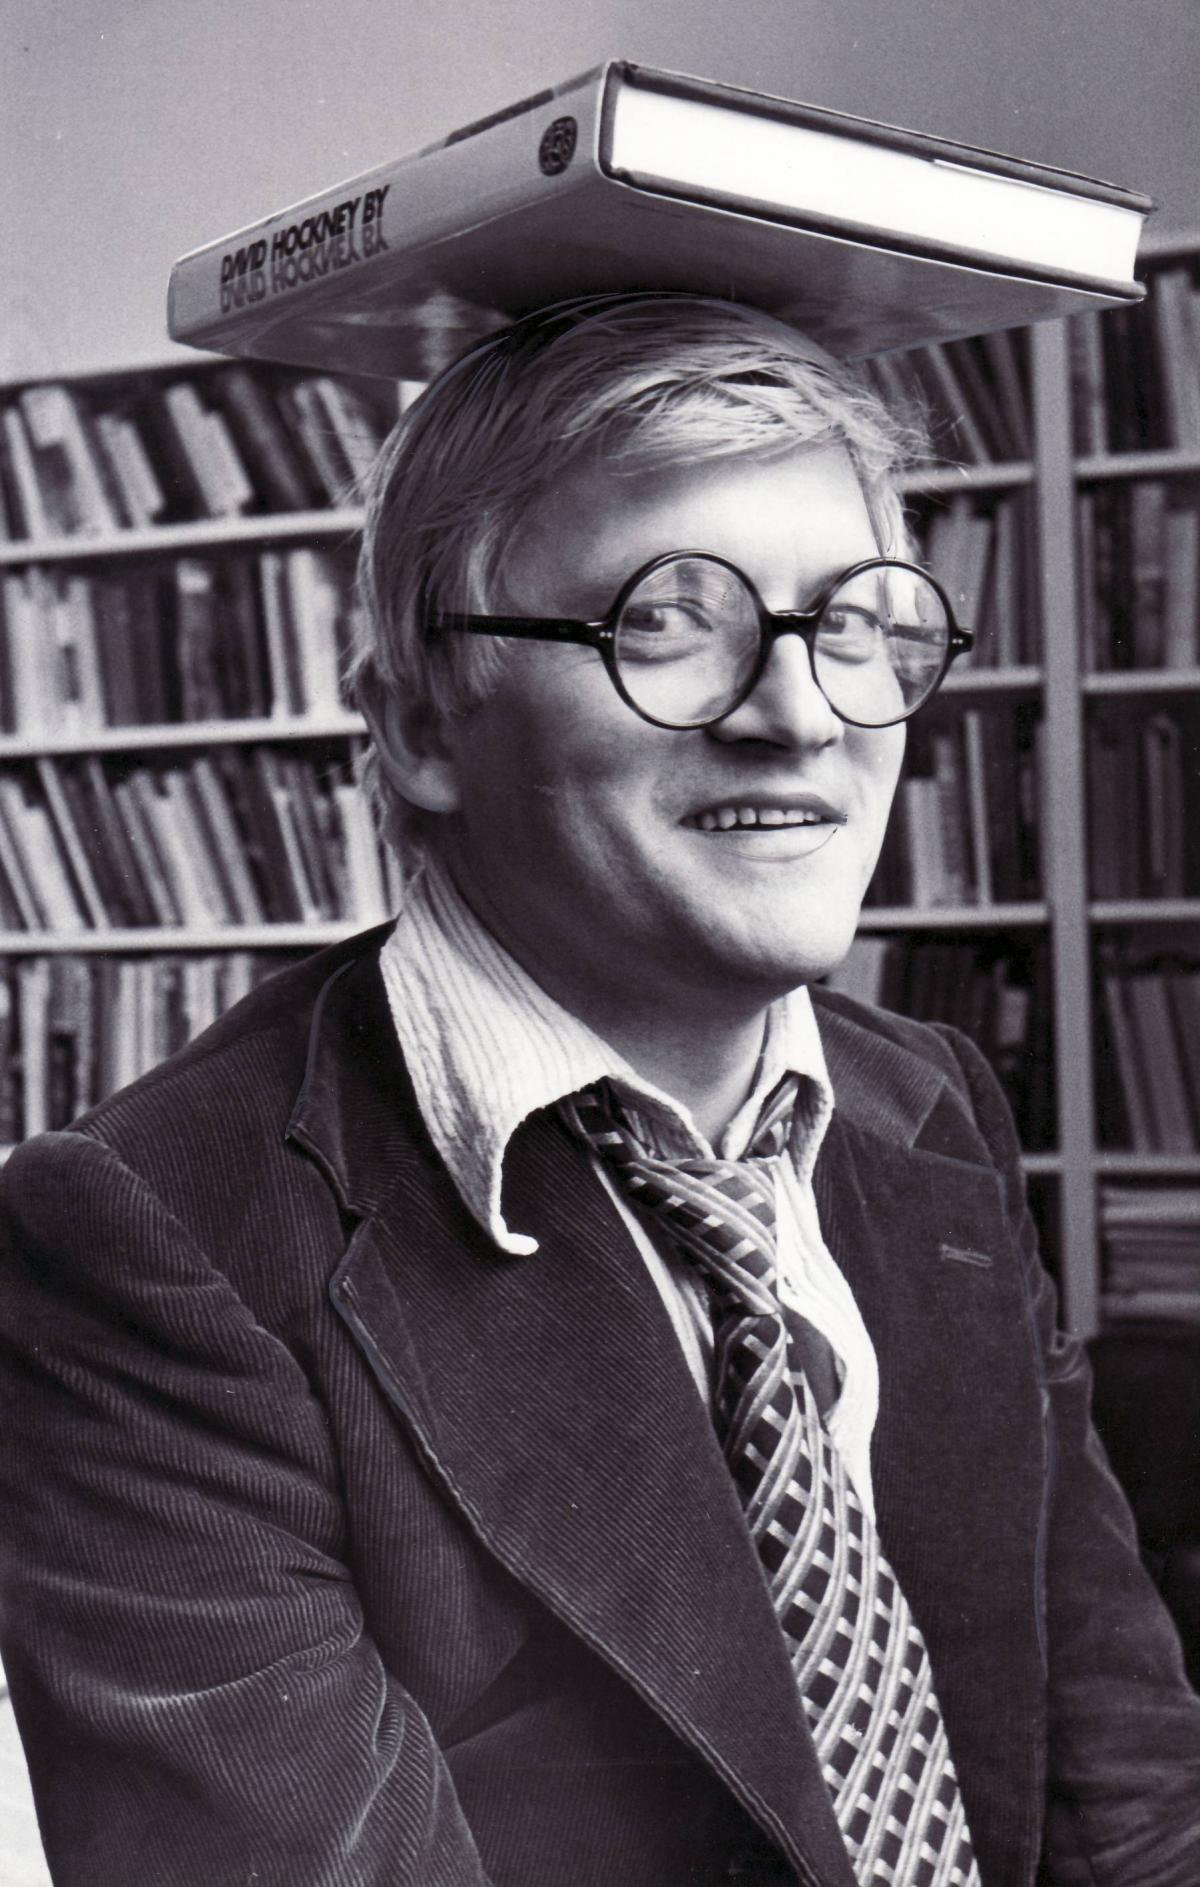 David Hockney at Bradford Central Library 1976